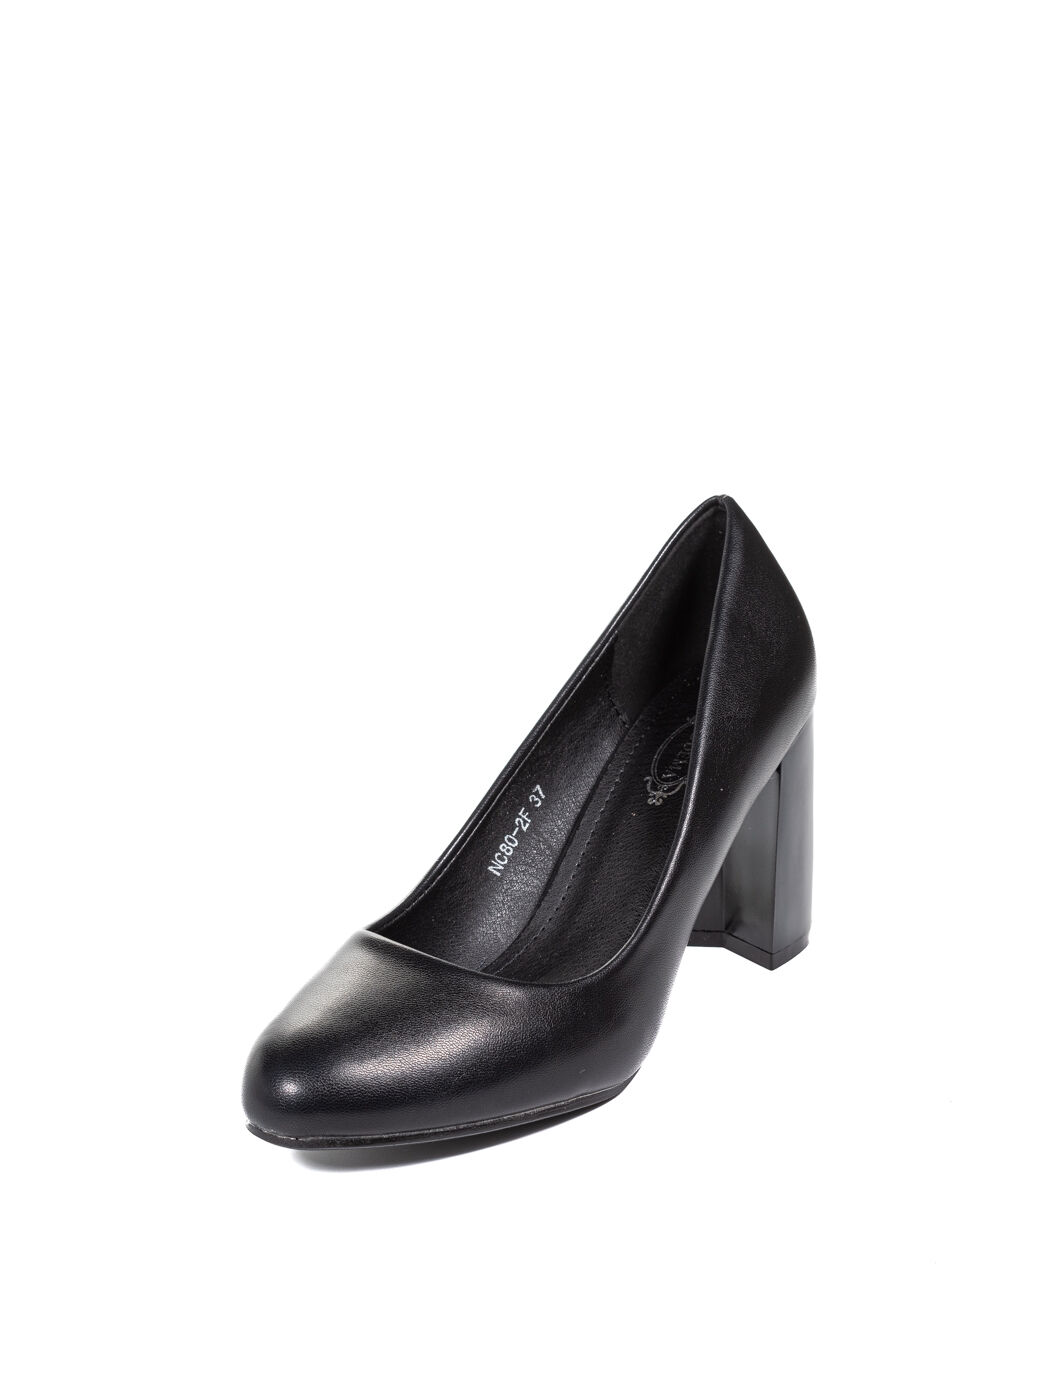 Туфли женские черные экокожа каблук устойчивый демисезон FM вид 0